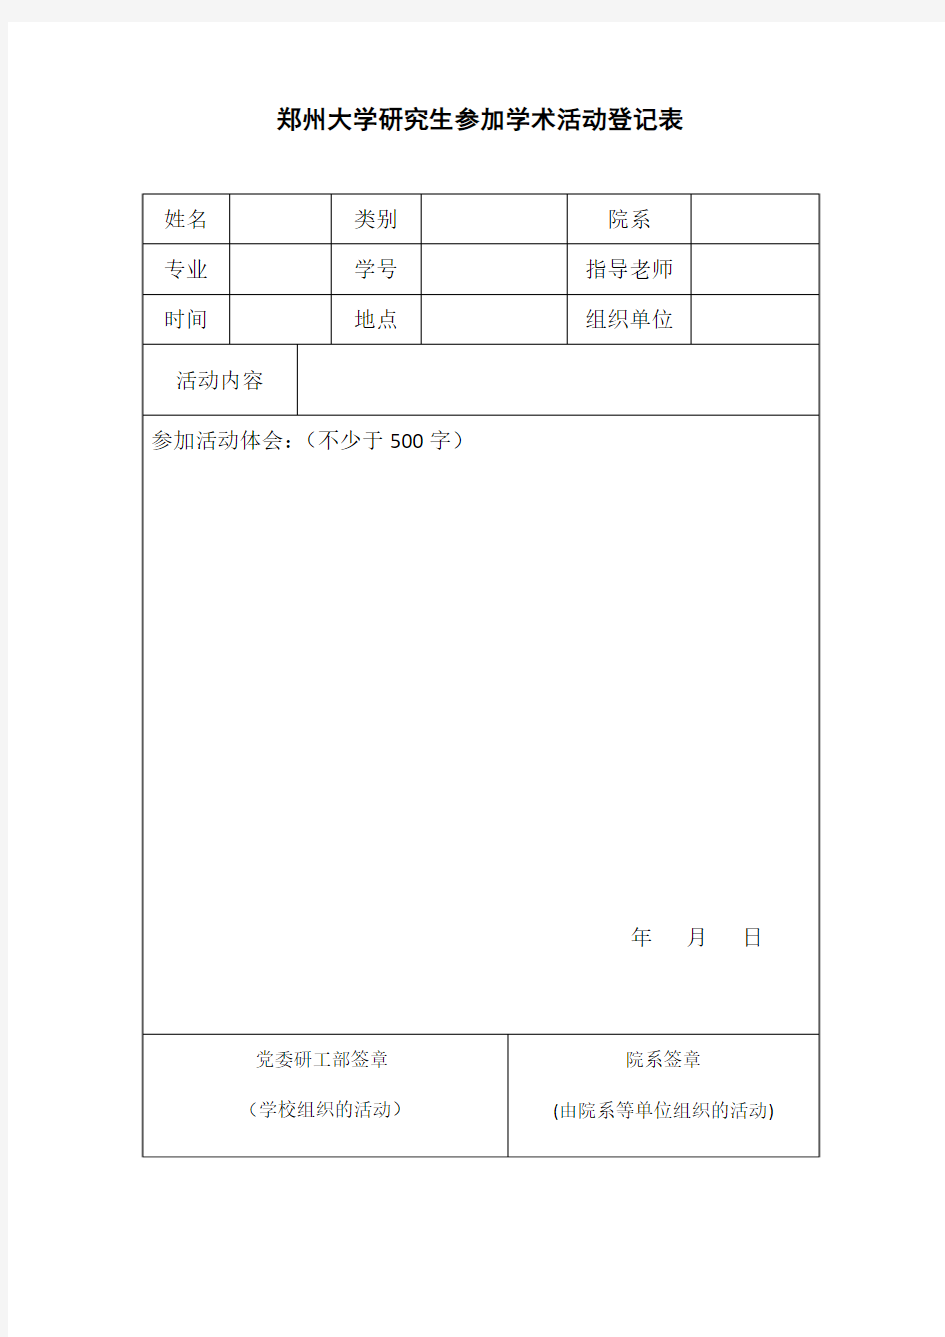 郑州大学研究生参加学术报告登记表